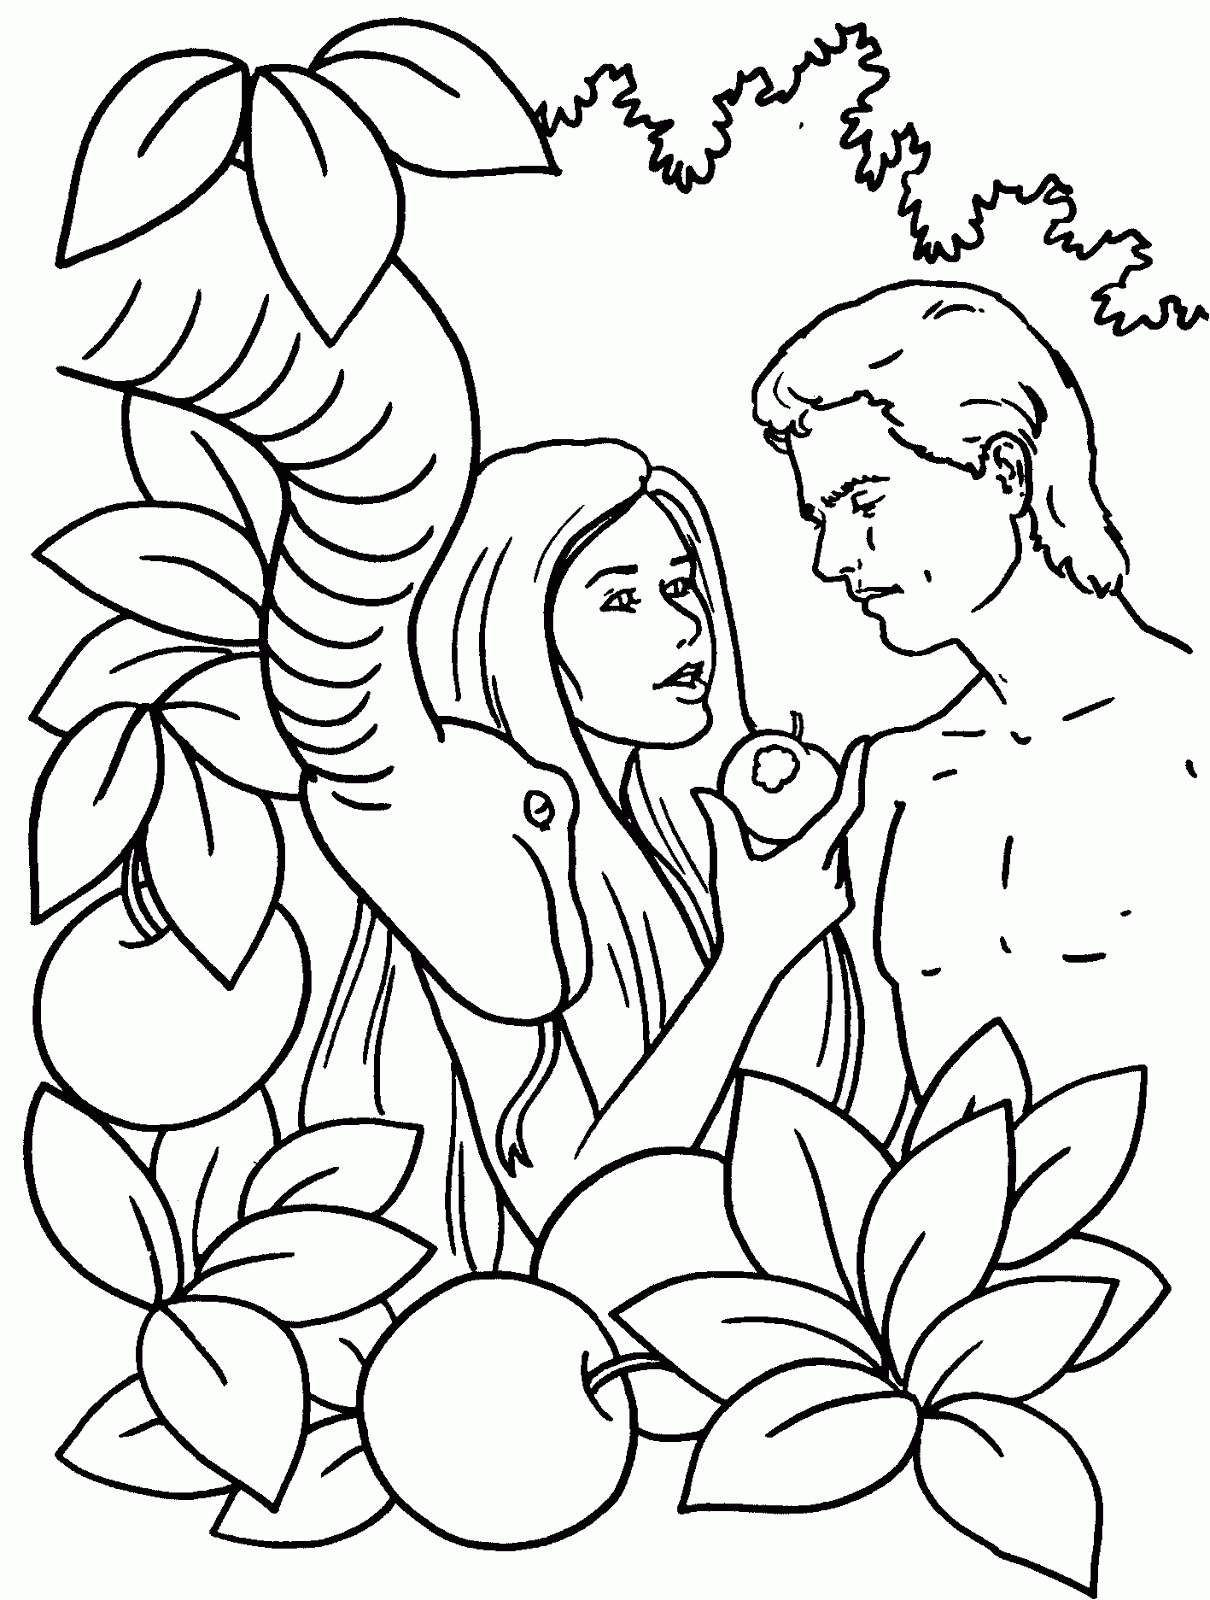 Dibujo del Pecado de Adán y Eva para colorear